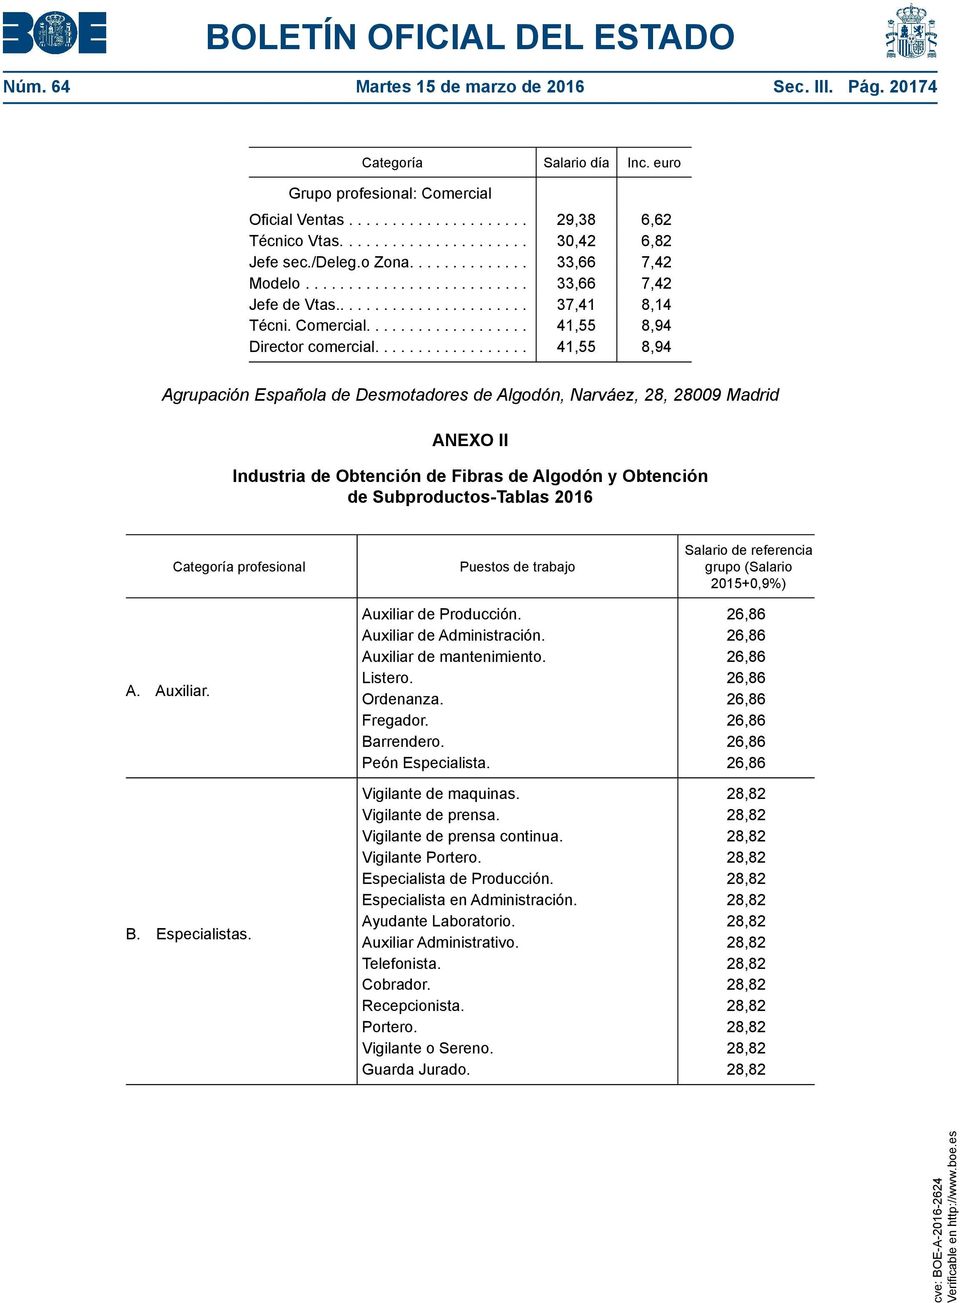 ... 41,55 8,94 Agrupación Española de Desmotadores de Algodón, Narváez, 28, 28009 Madrid ANEXO II Industria de Obtención de Fibras de Algodón y Obtención de Subproductos-Tablas 2016 Categoría